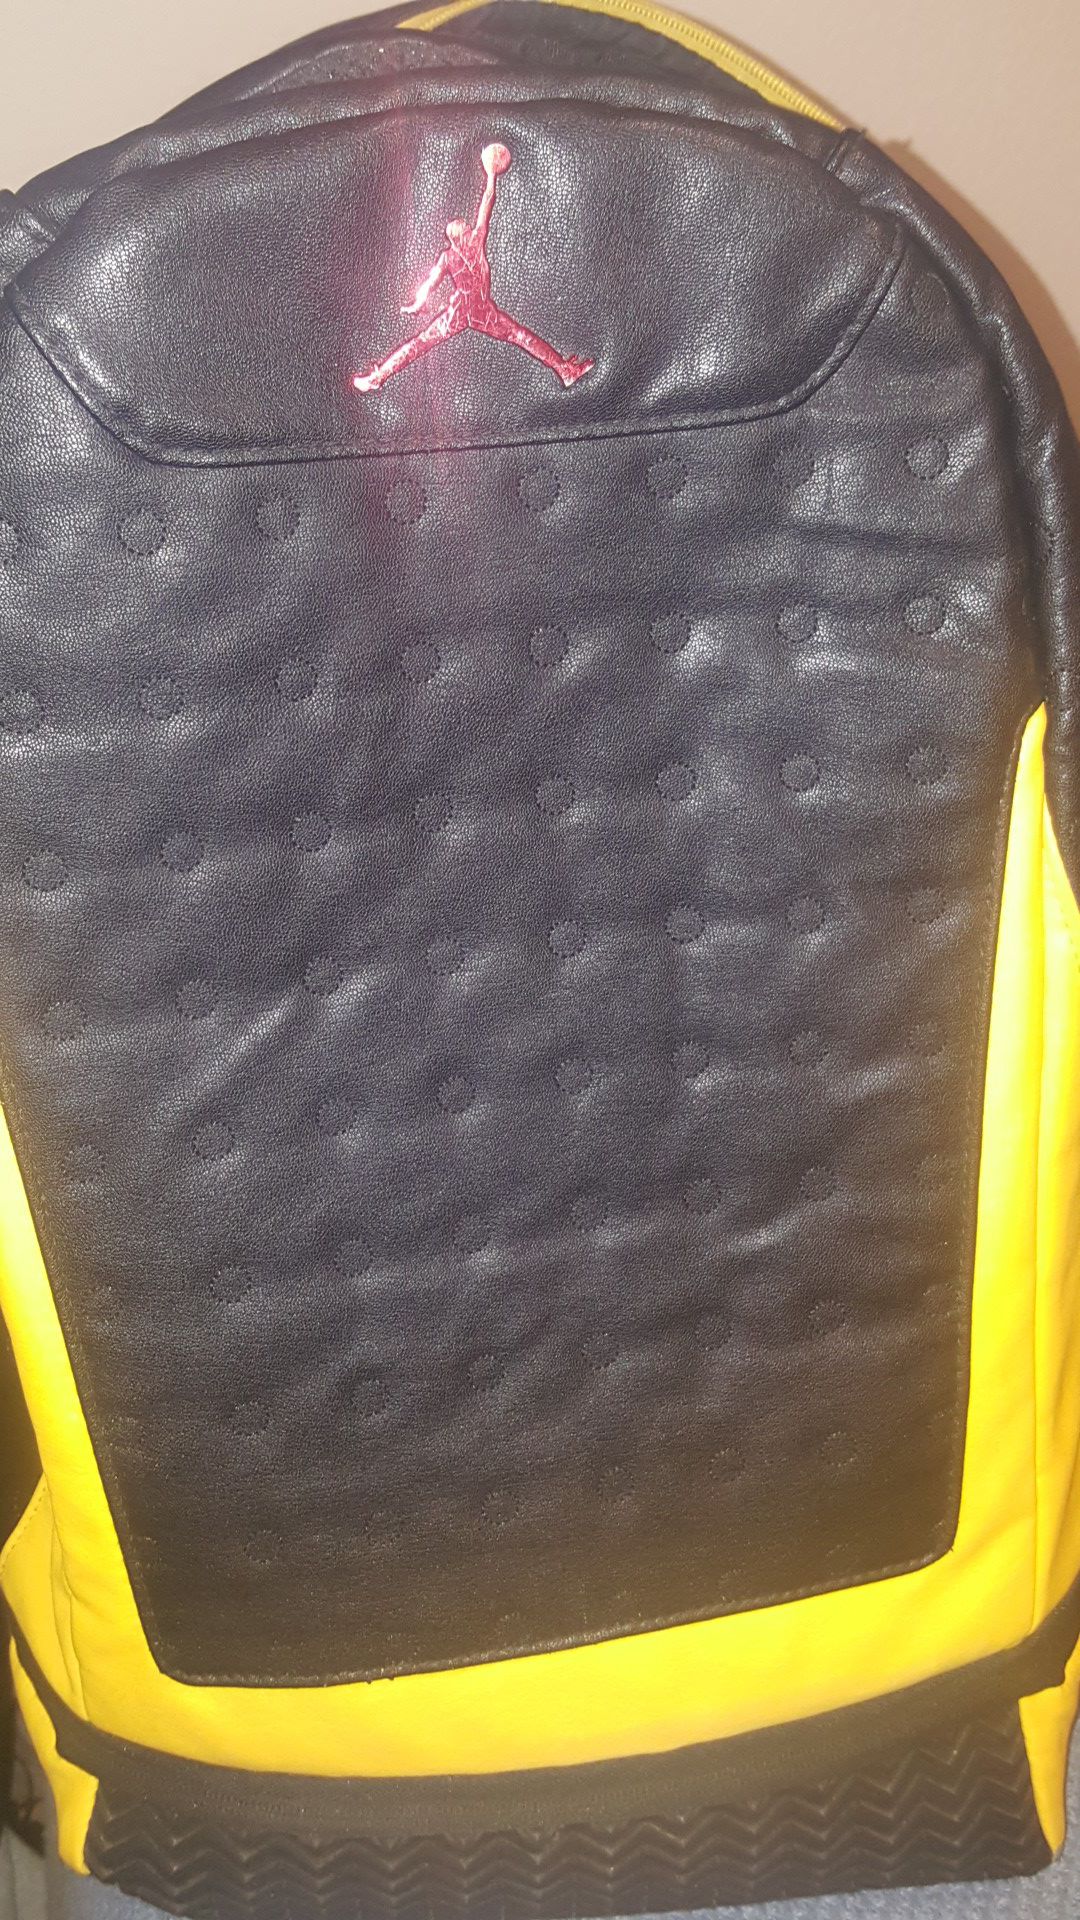 Jordan 13s rubber bottom backpack